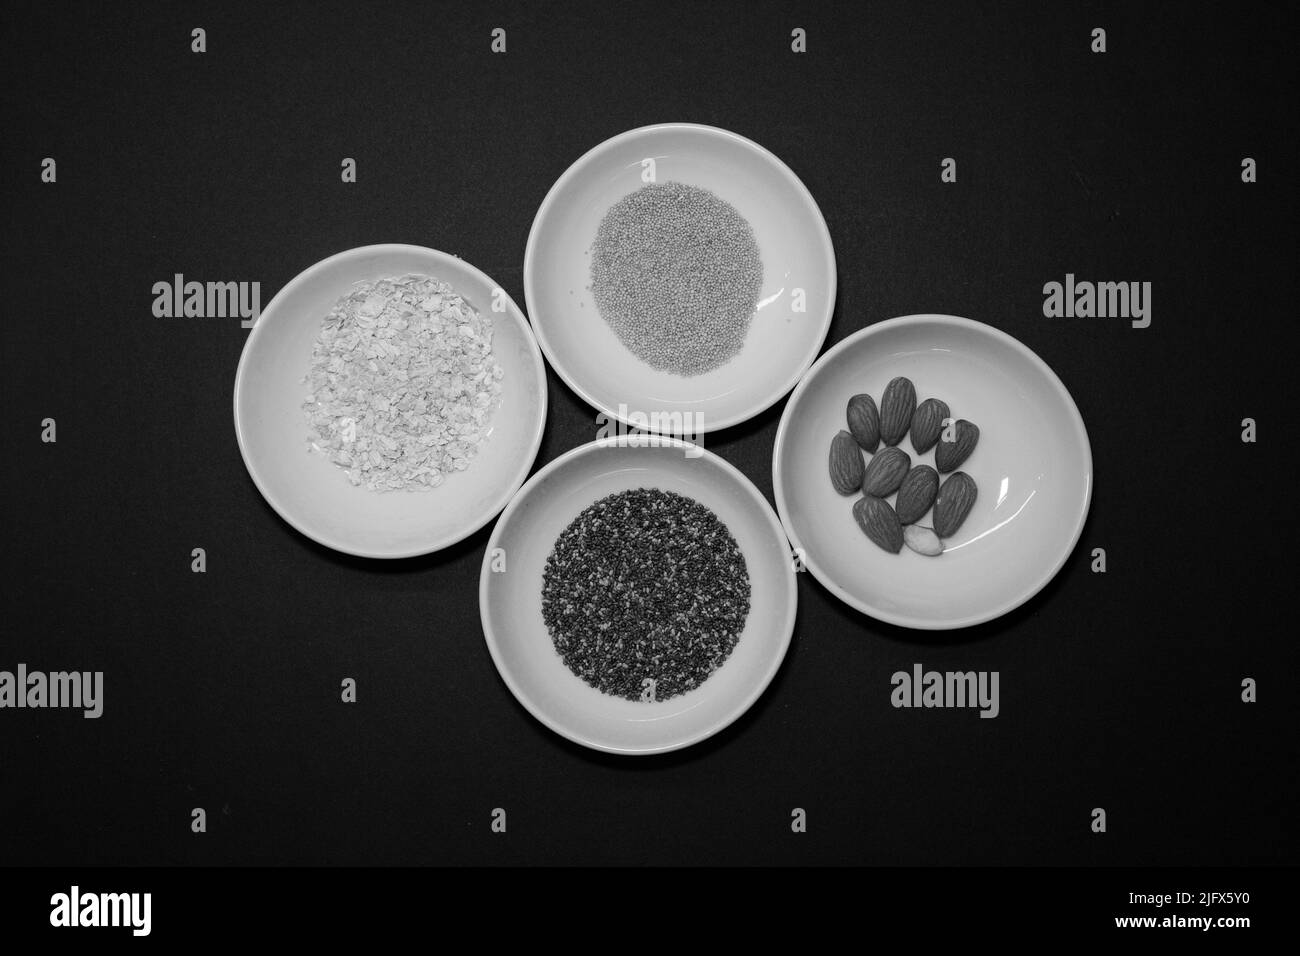 Amandes, chia et autres graines végétaliennes saines dans 4 bols ronds en porcelaine blanche sur fond noir Banque D'Images